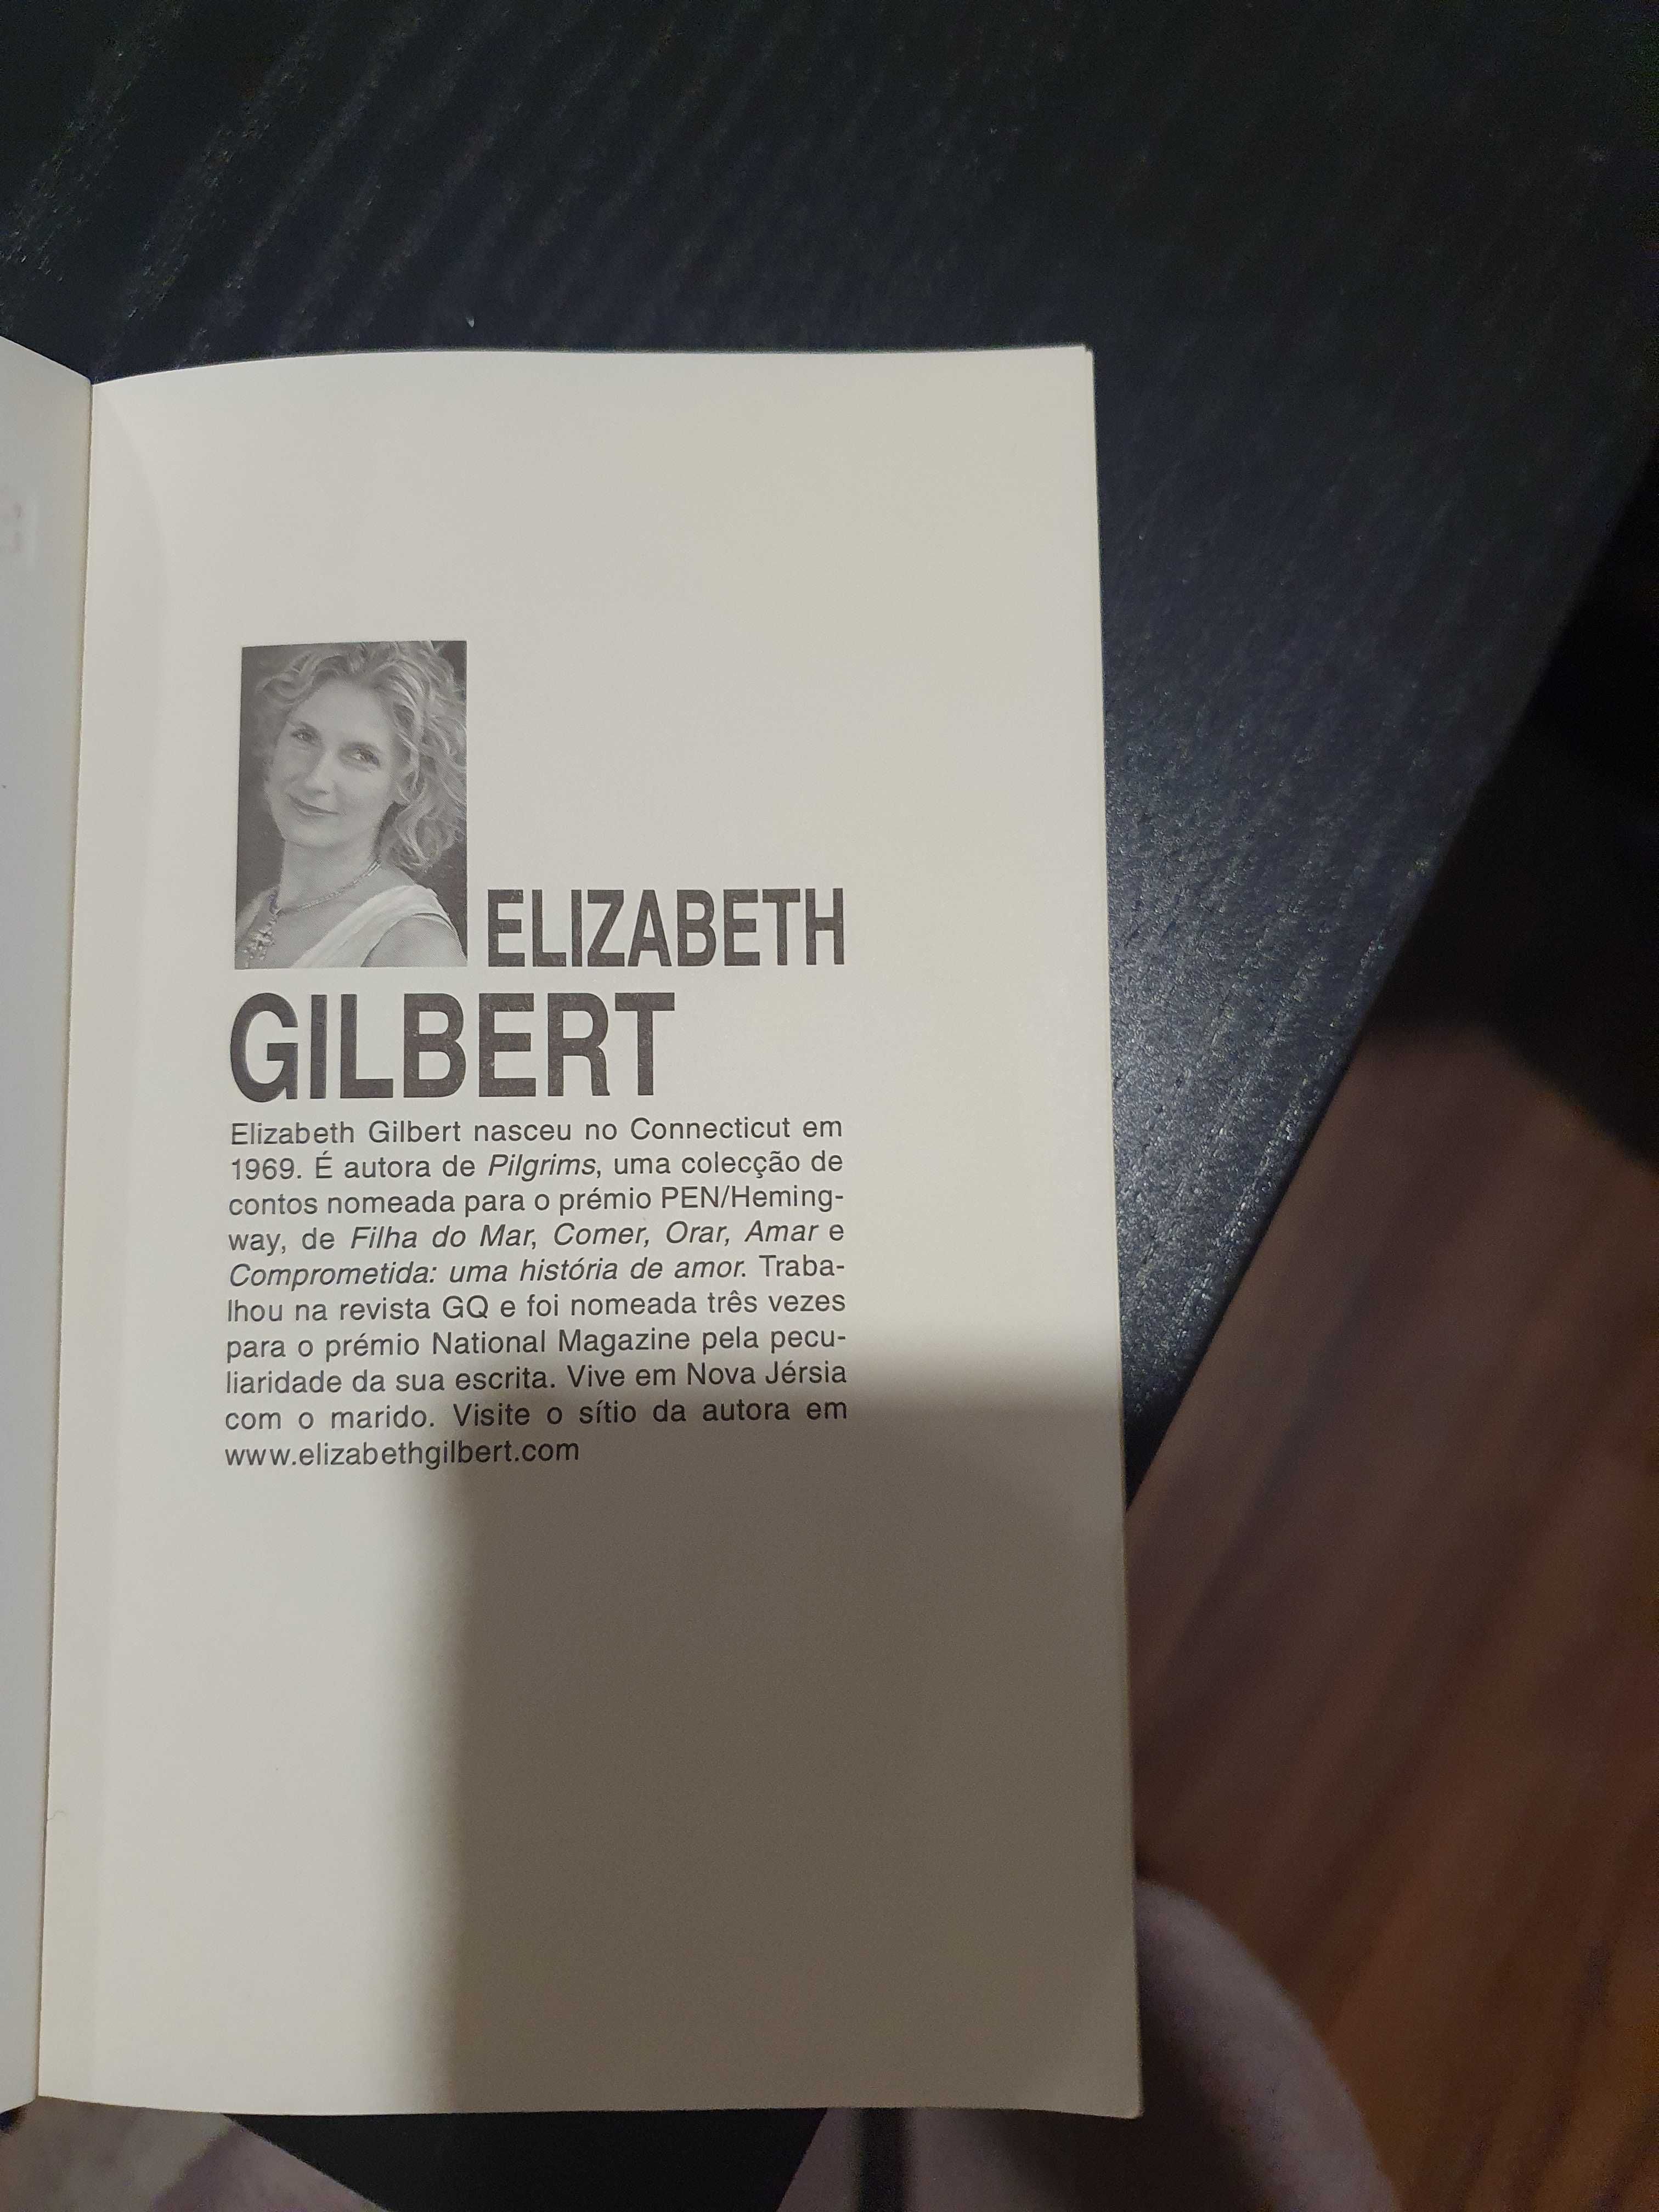 Vendo livro de bolso " comer, orar e amar" da autora Elizabeh Gilbert